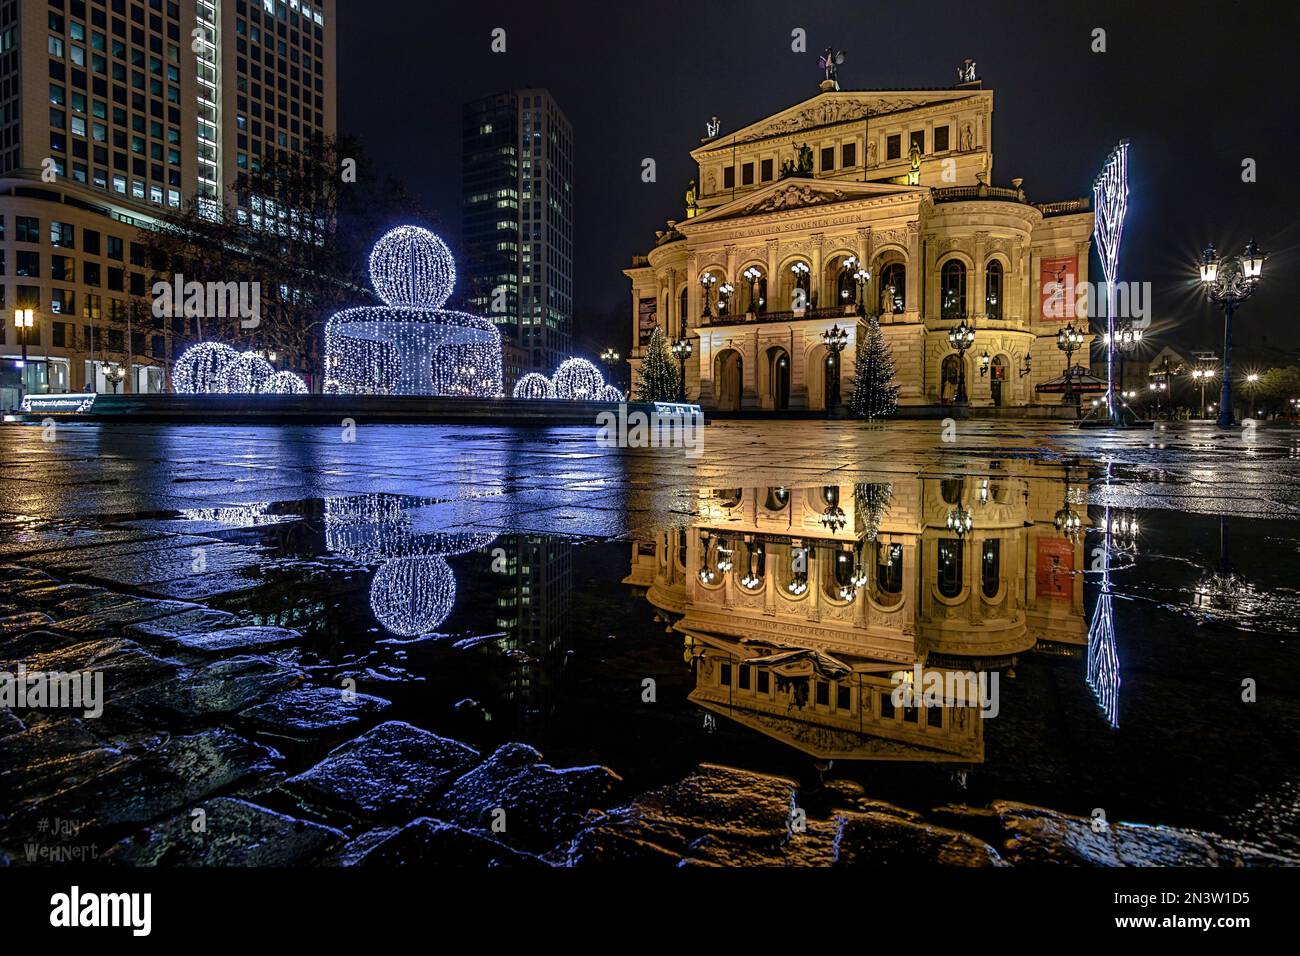 Alte oper, por la noche, iluminado y decorado para Navidad, Frankfurt am Main, Hesse, Alemania Foto de stock